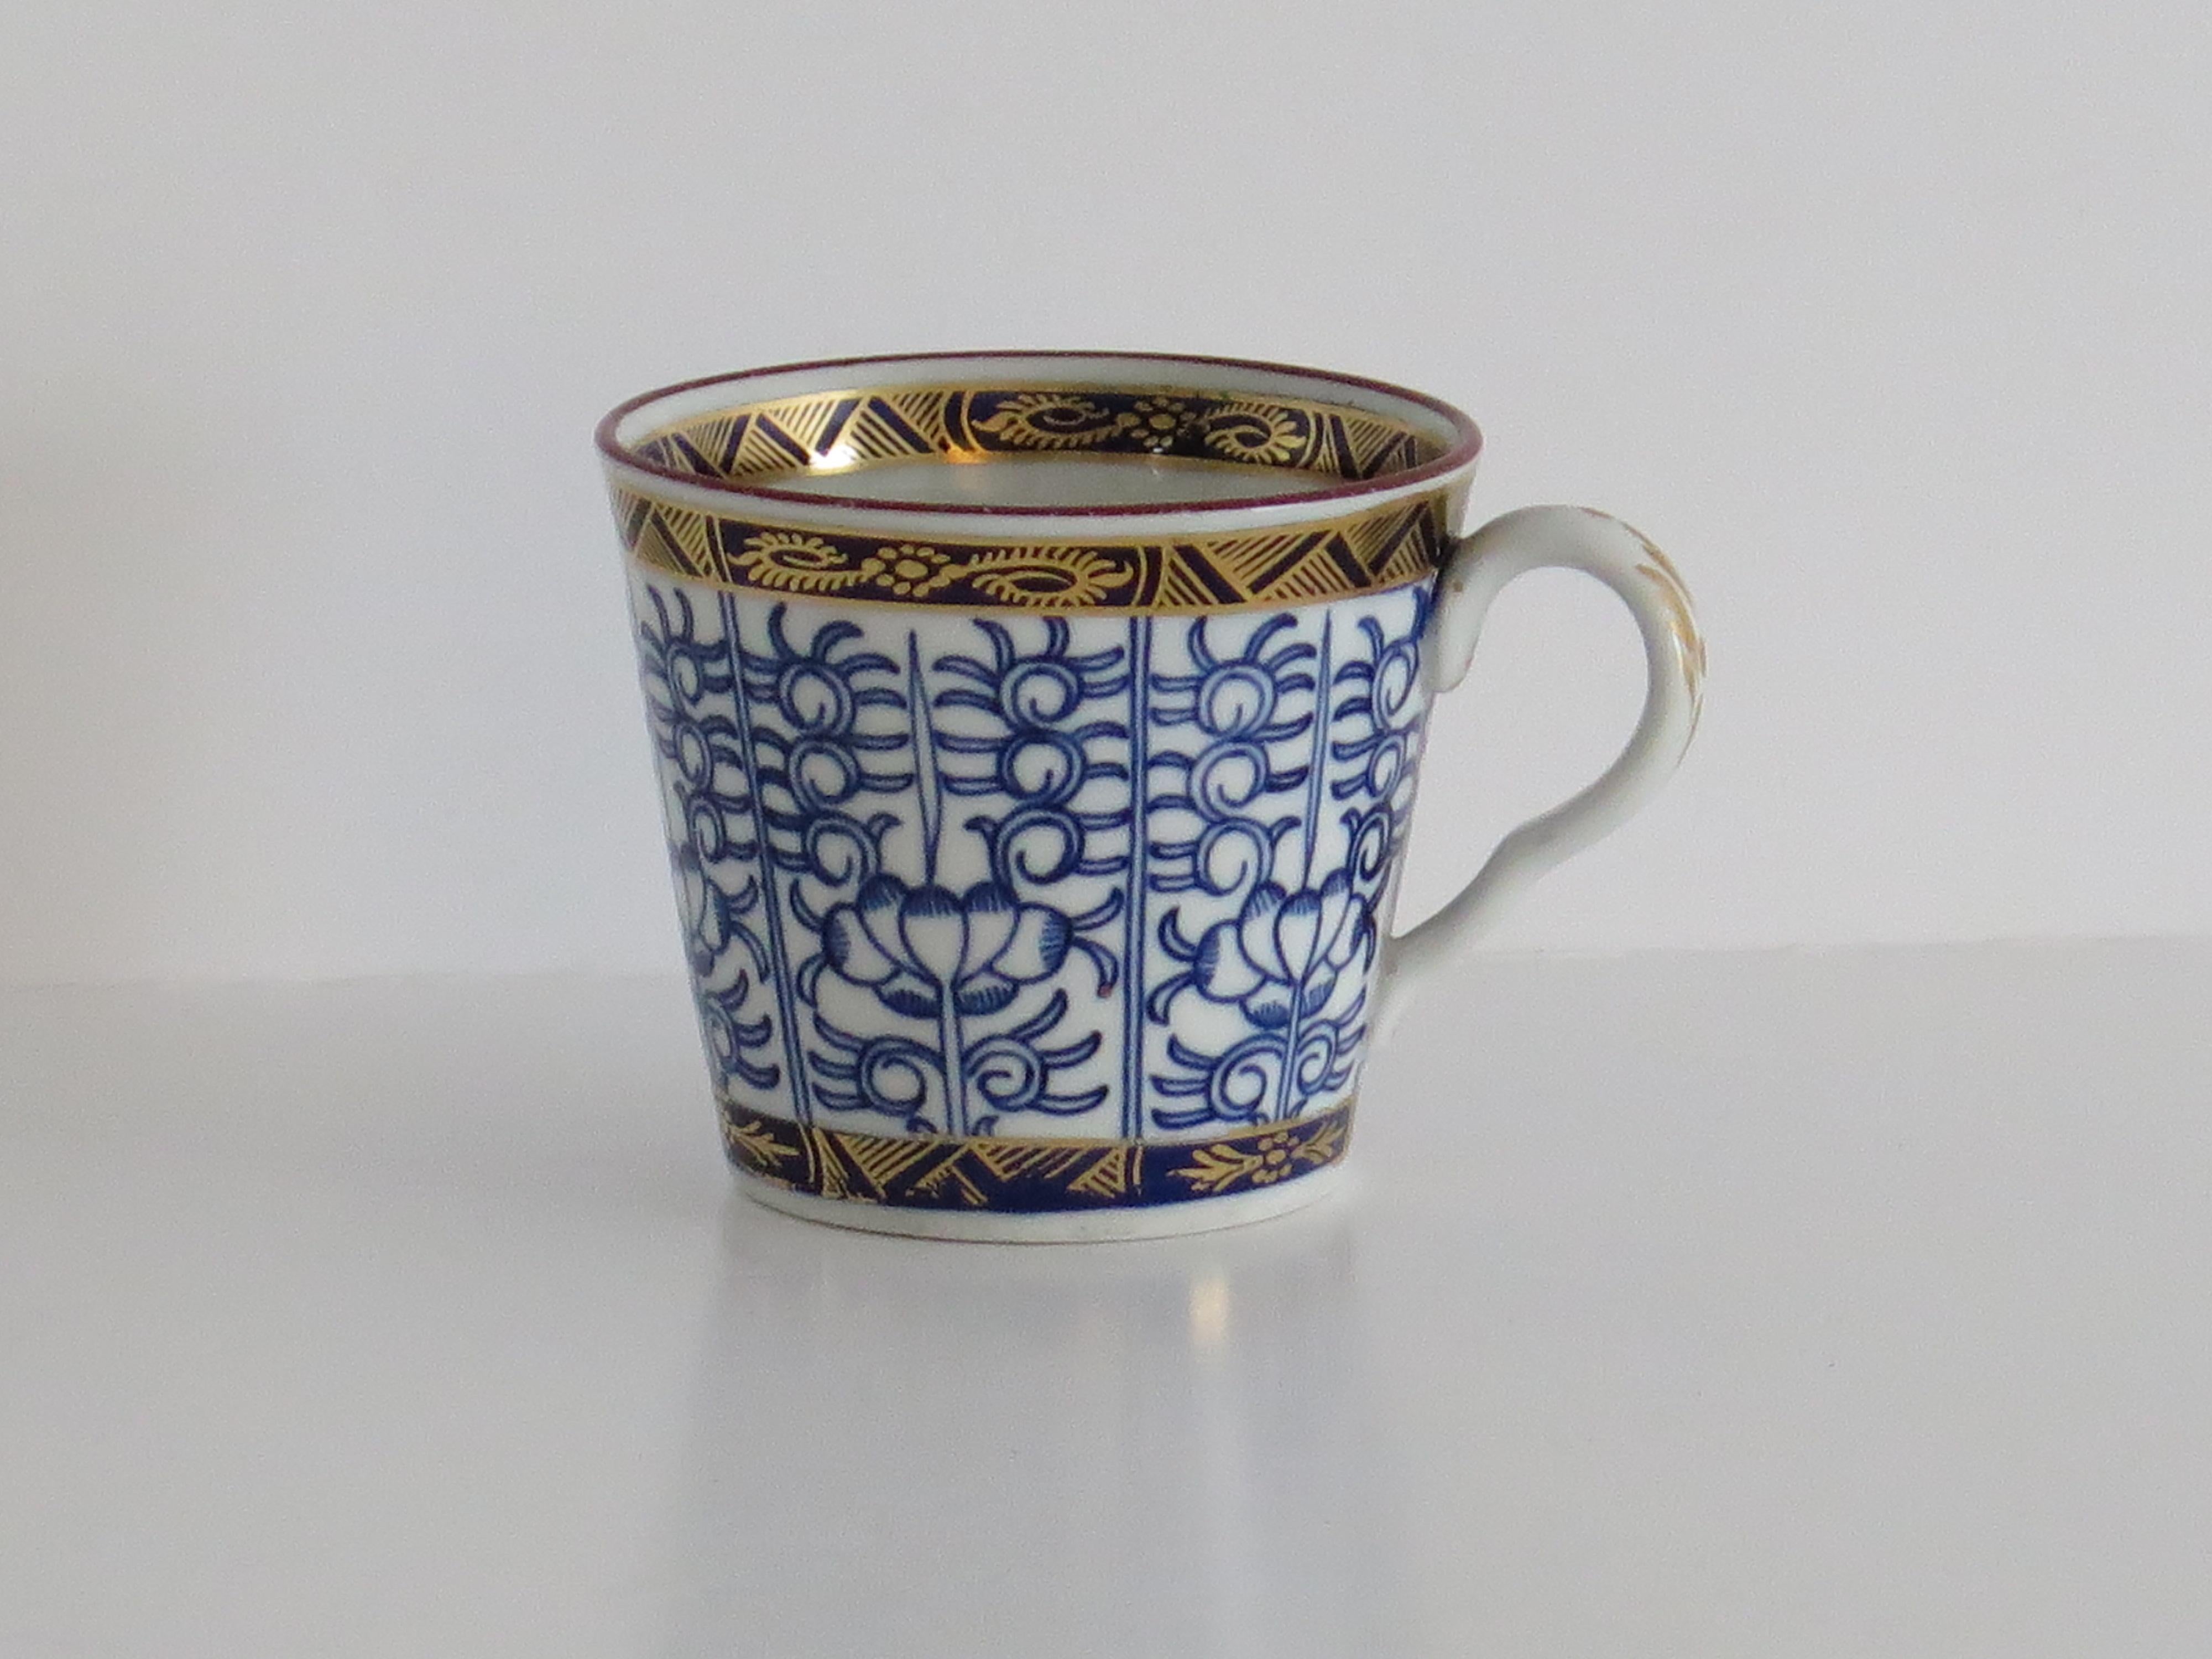 Il s'agit d'une très bonne boîte à café ou tasse en porcelaine dure avec une anse, décorée à la main dans le motif Royal Lily par Worcester pendant la période de Barr, entièrement marquée à la base et datant d'environ 1792 - 1807.

La pièce est bien